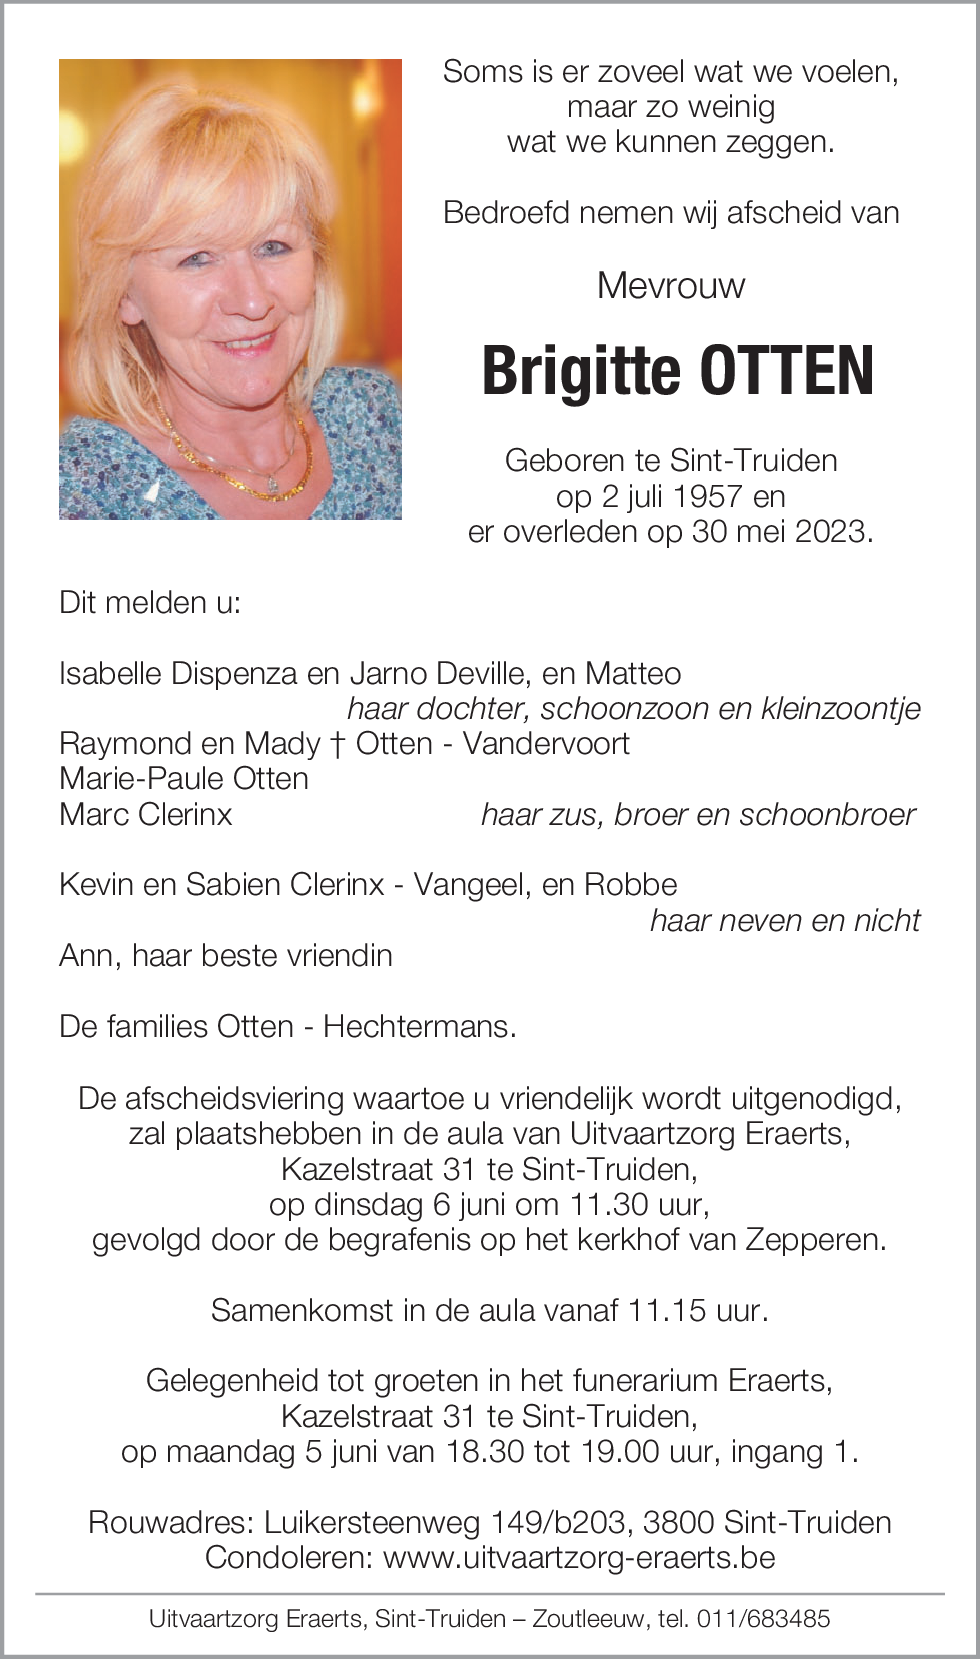 Brigitte Otten